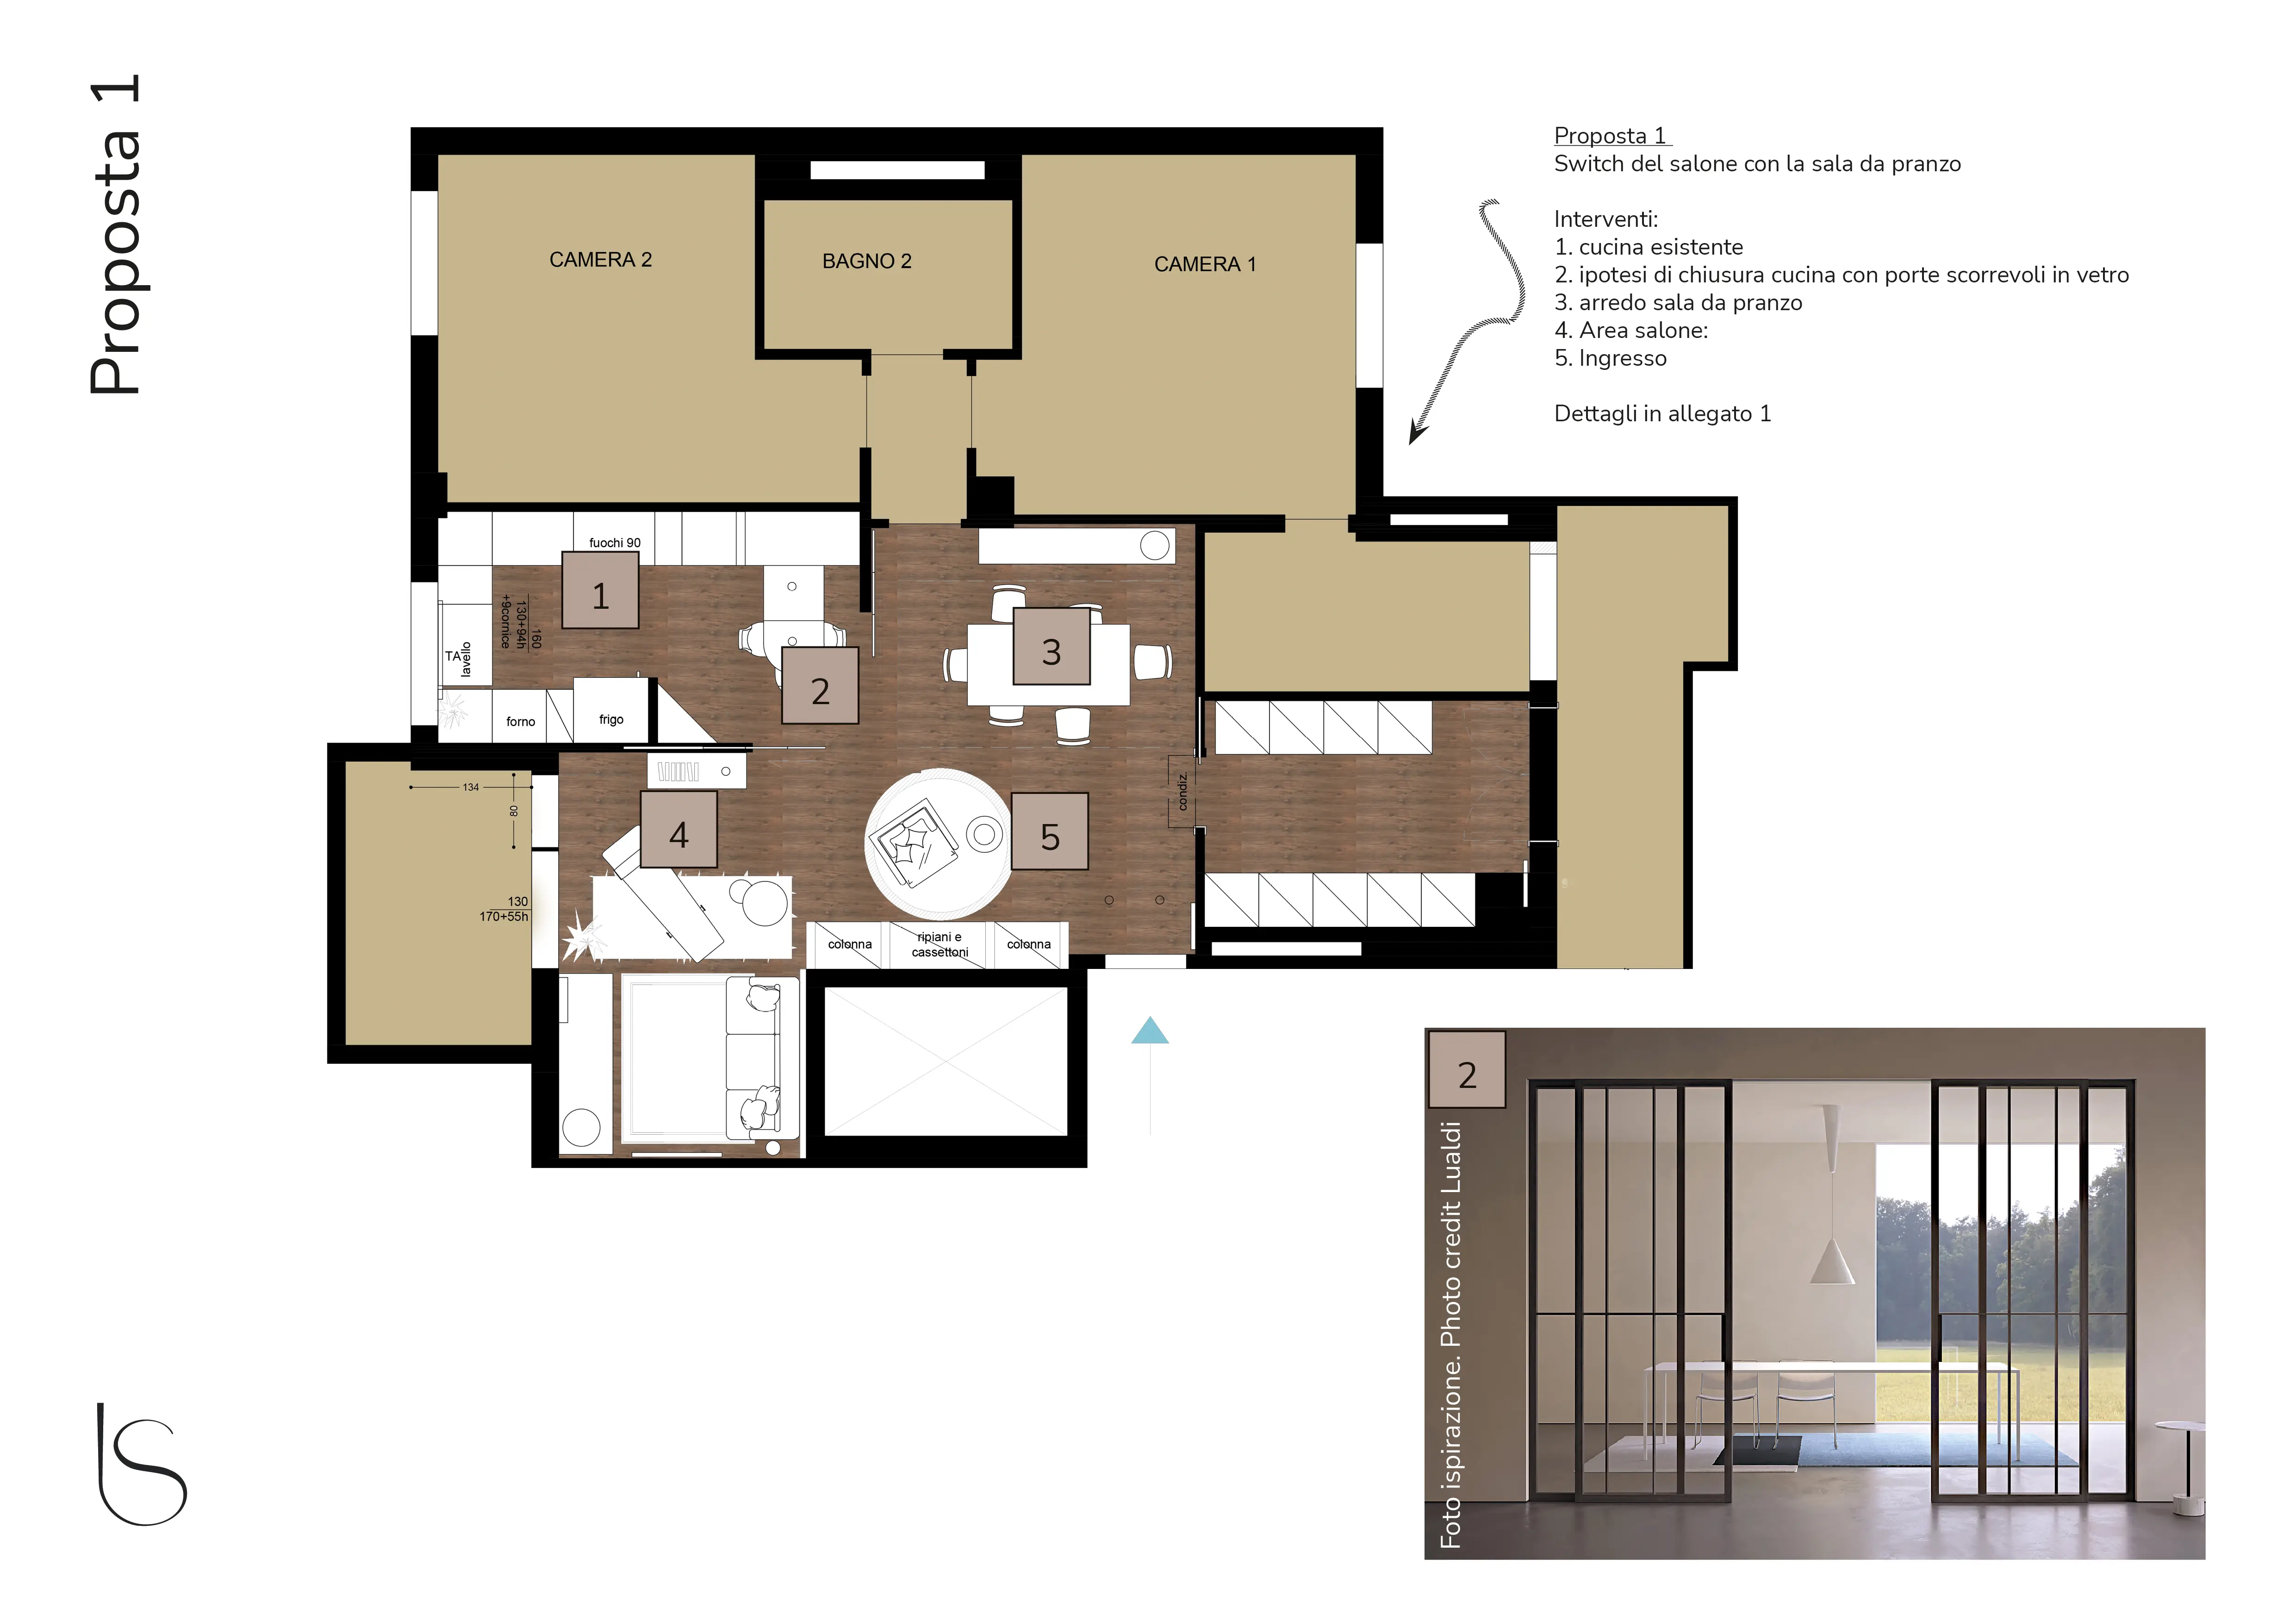 Pianta redistribuzione spazi proposta 1 a cura dello studio Elles Interior Design, che ha guidato la consulenza di interior design per un appartamento in via di ristrutturazione.